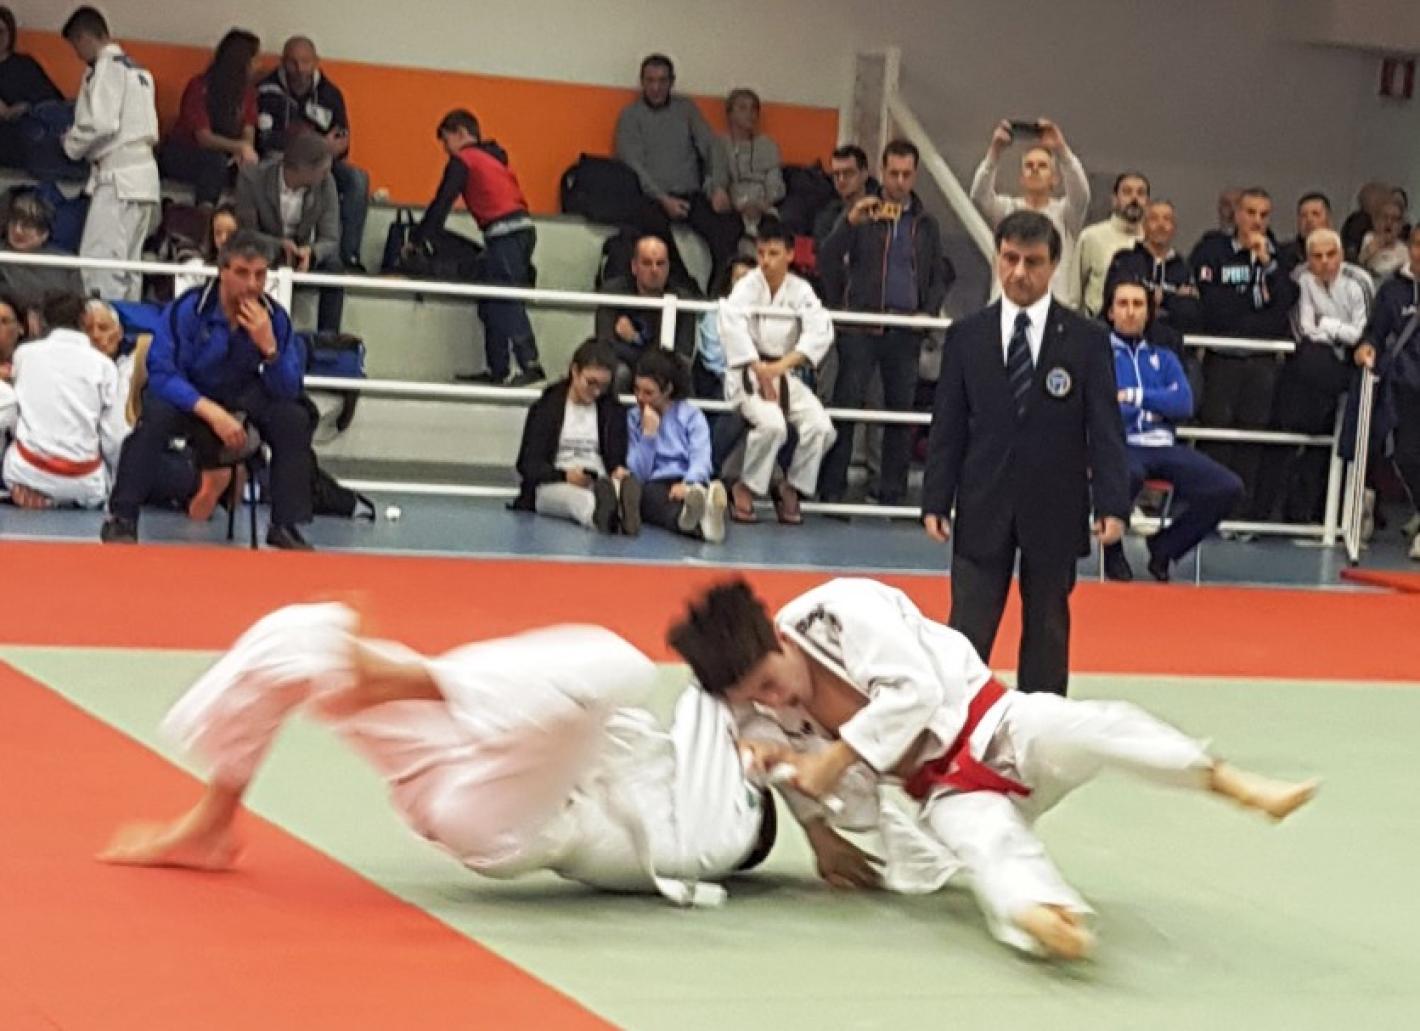 images/veneto/Judo/Gallery_Judo_2019/medium/Qual-cadetti-2019.jpg